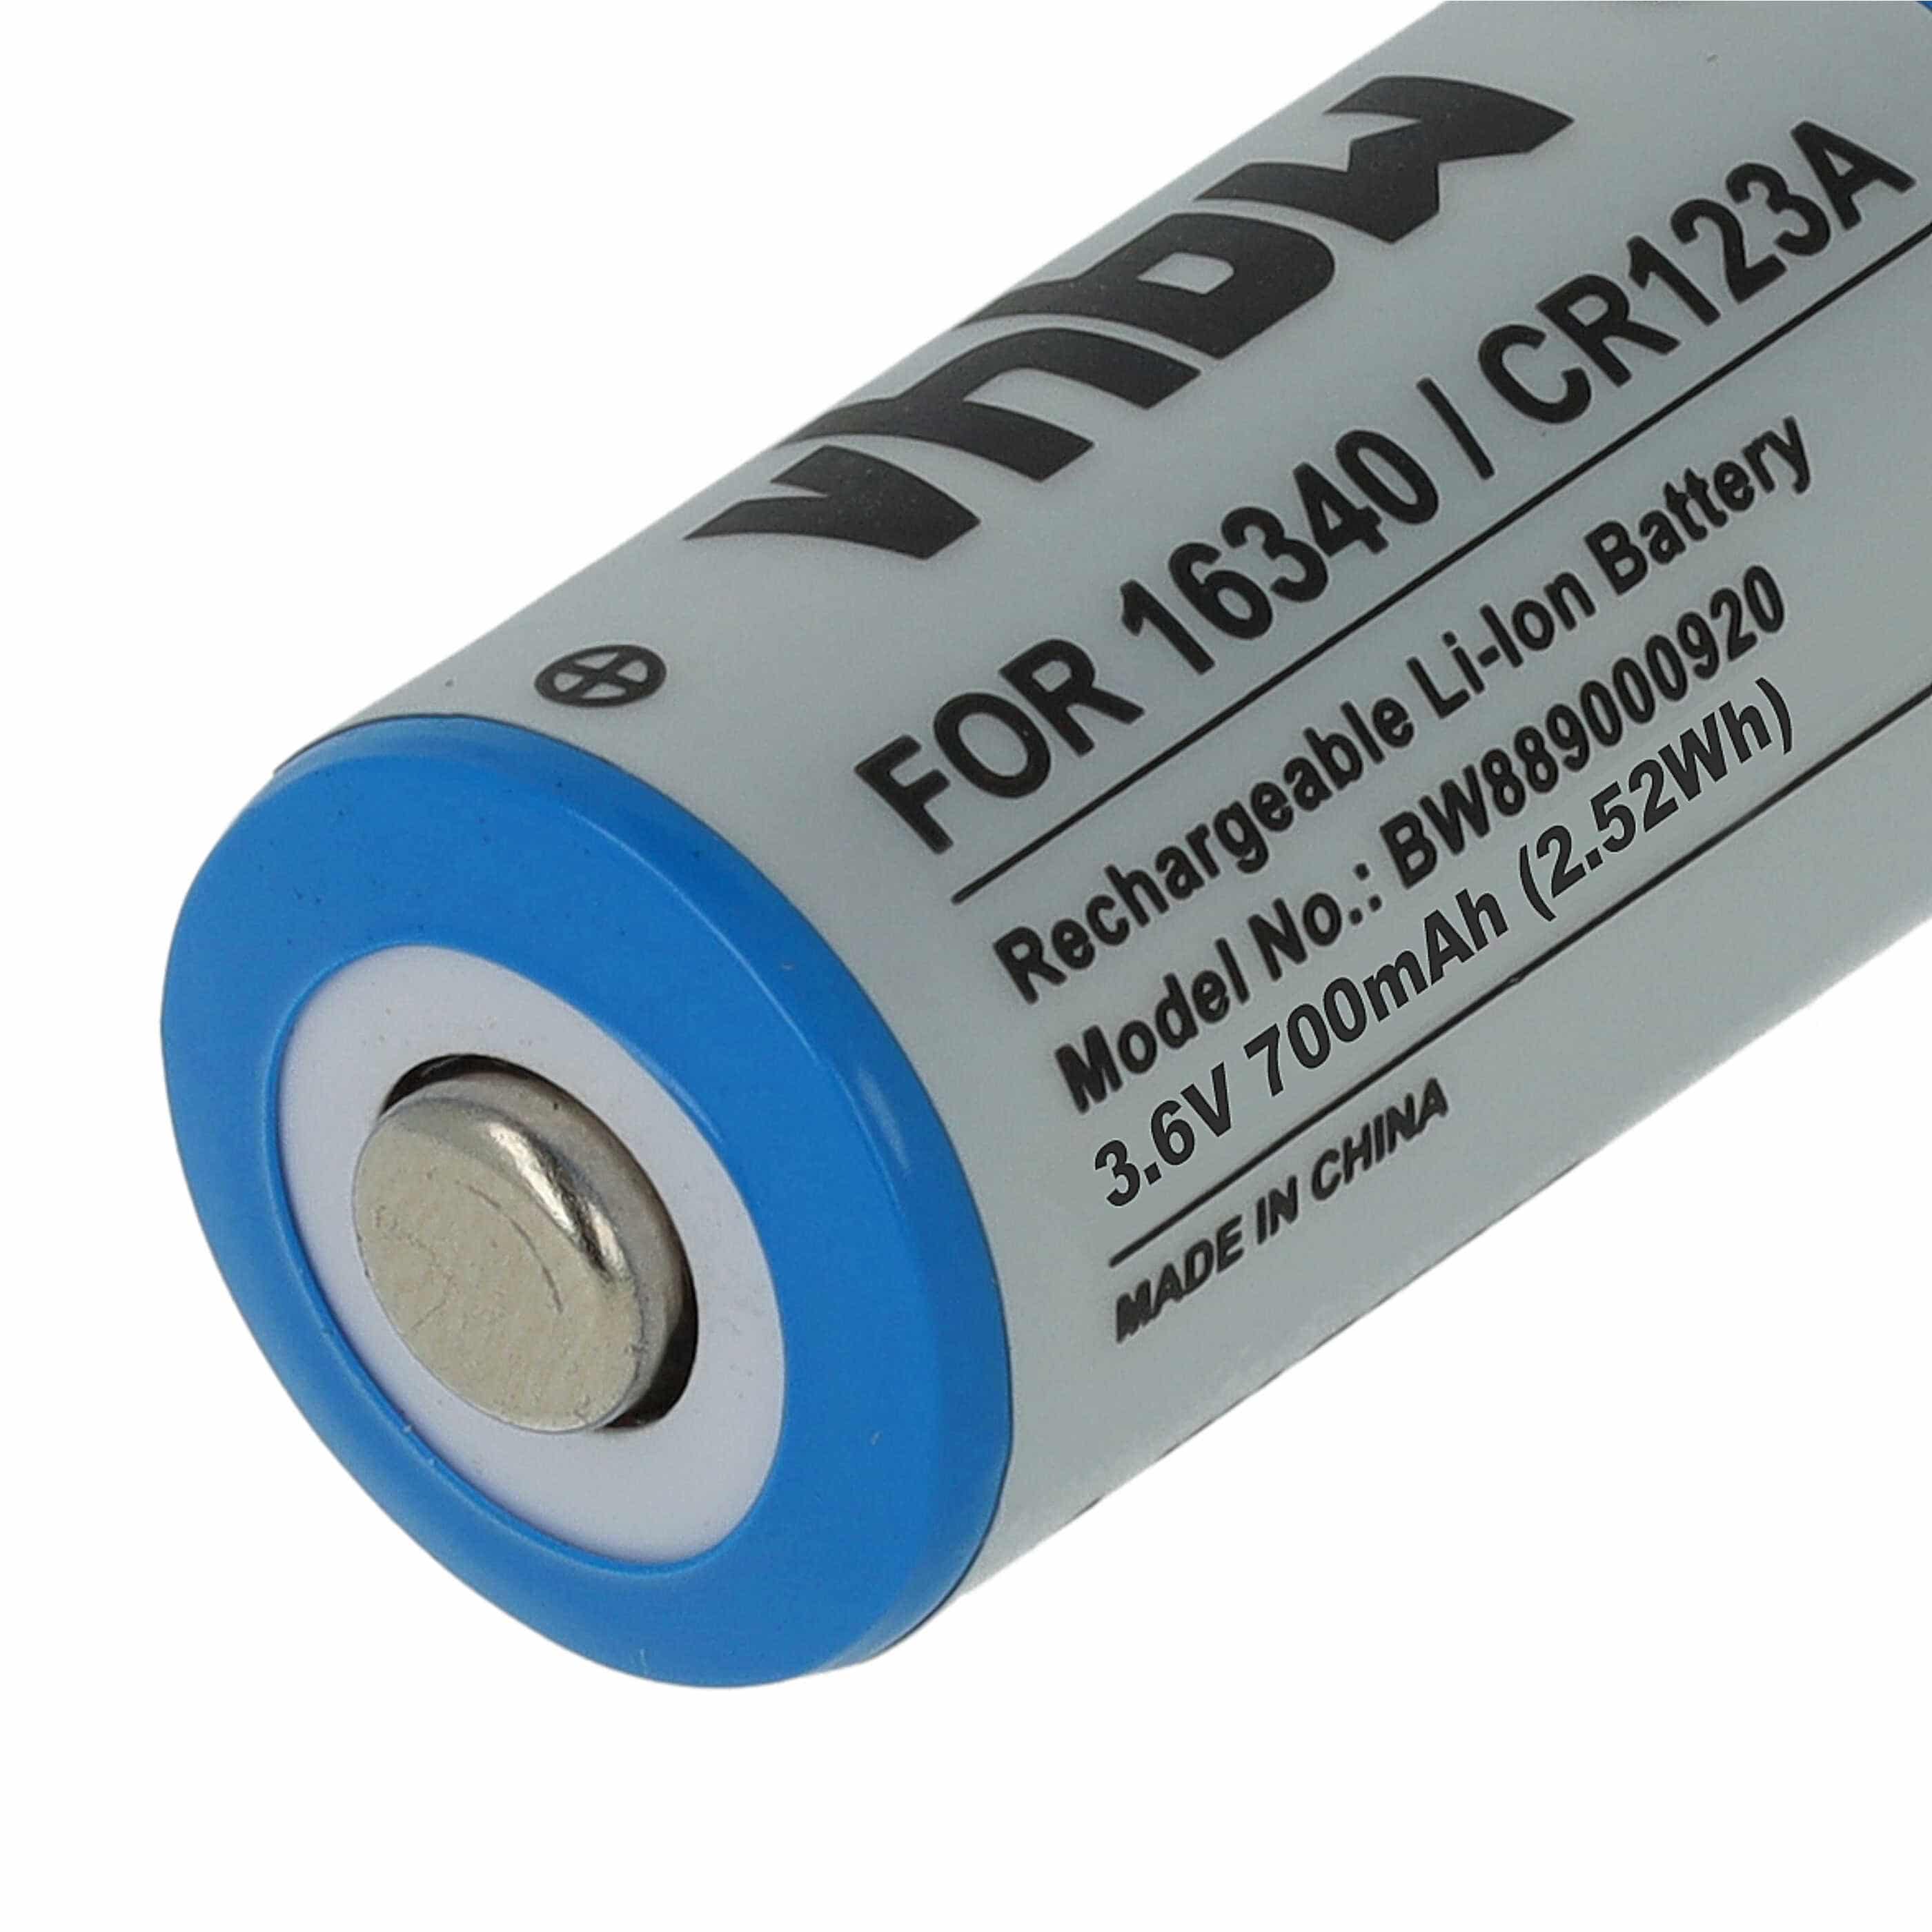 Battery Replacement for 16340, DL123A, CR123R, CR17335, EL123AP, K123LA, CR17345, CR123A - 700mAh 3.6V Li-Ion